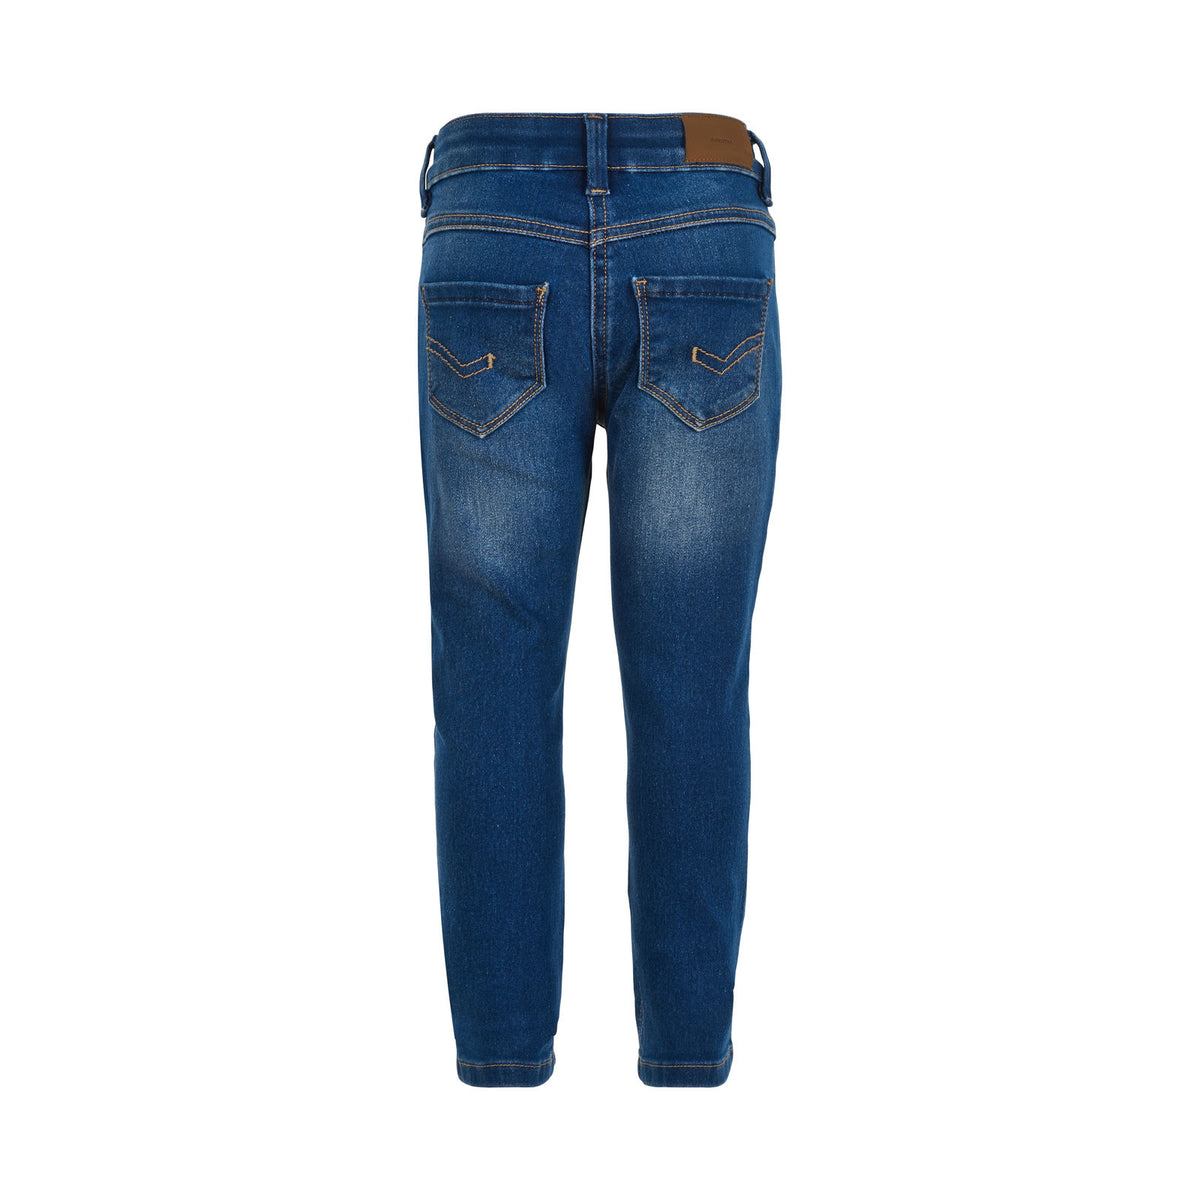 Jeans Power stretch slim fit KIDS Denim | Minymo